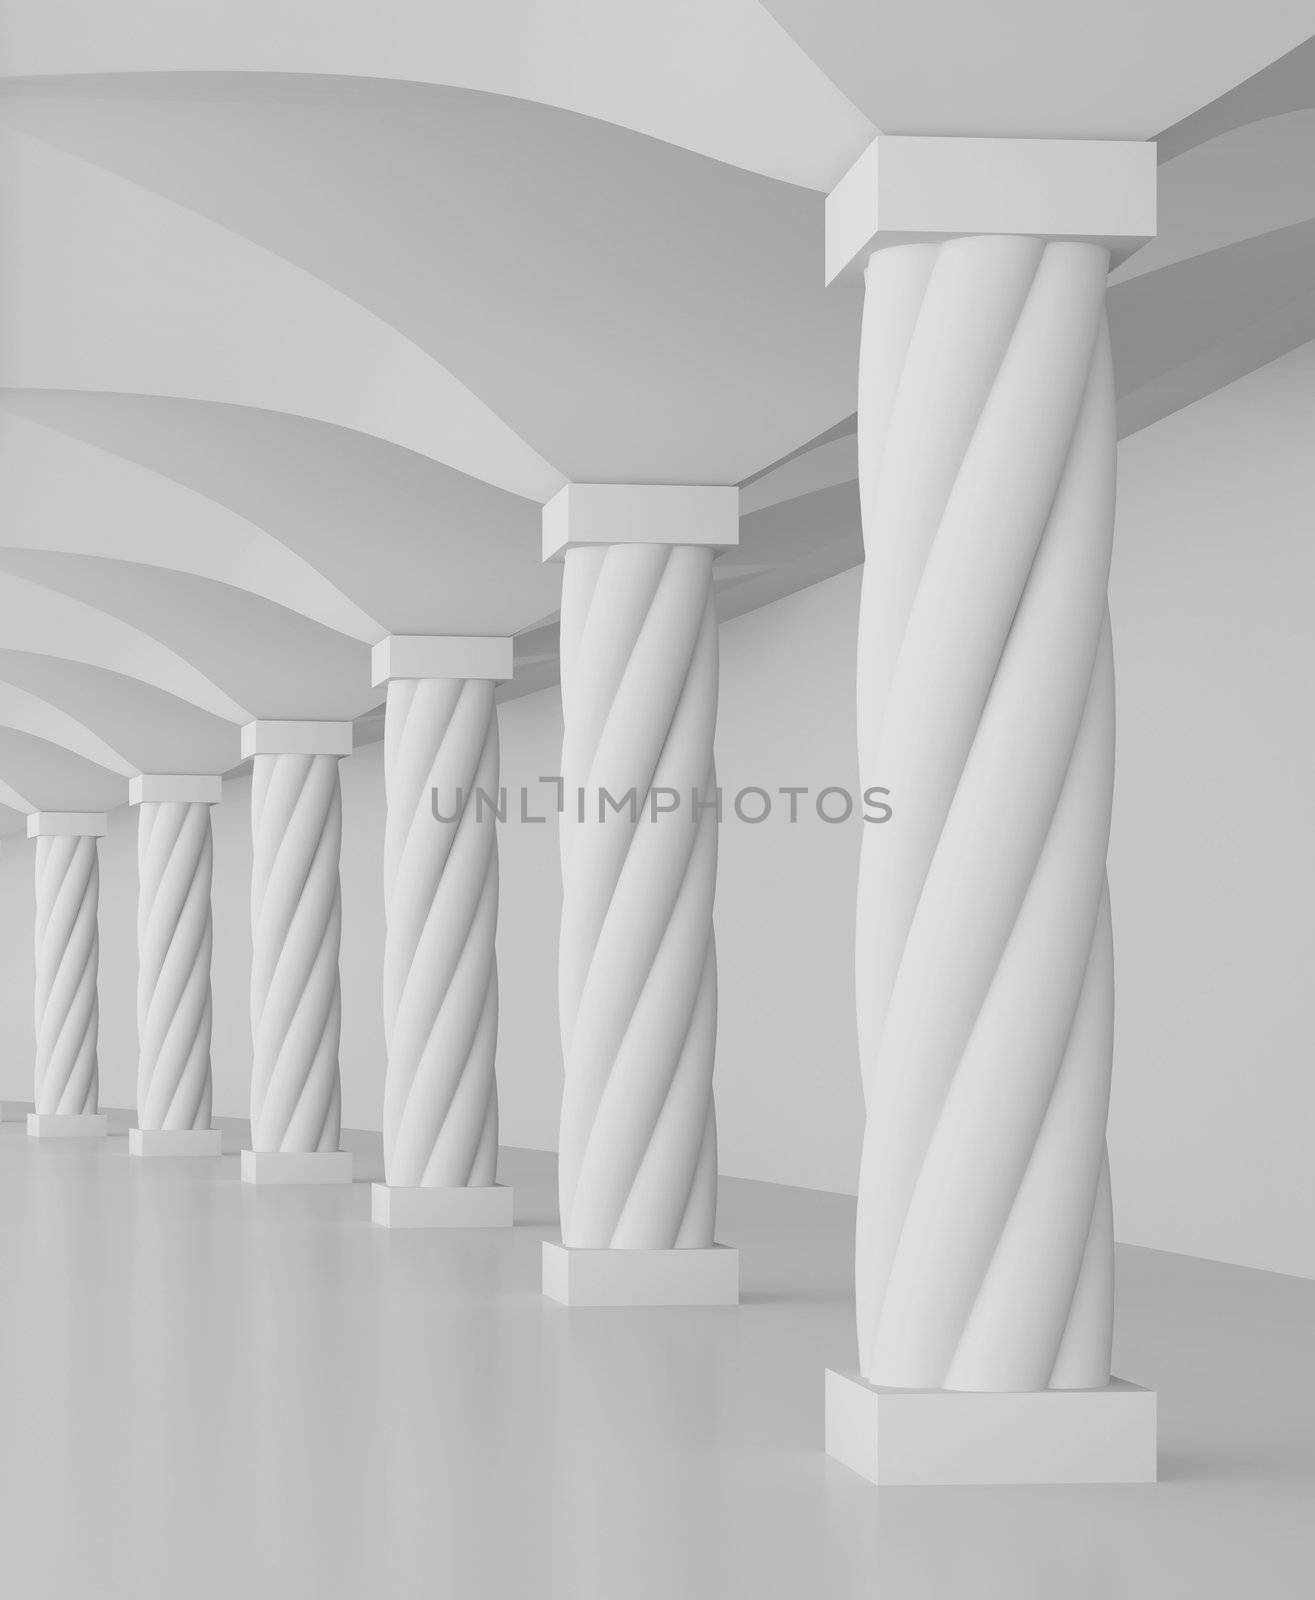 Hall of Columns by maxkrasnov